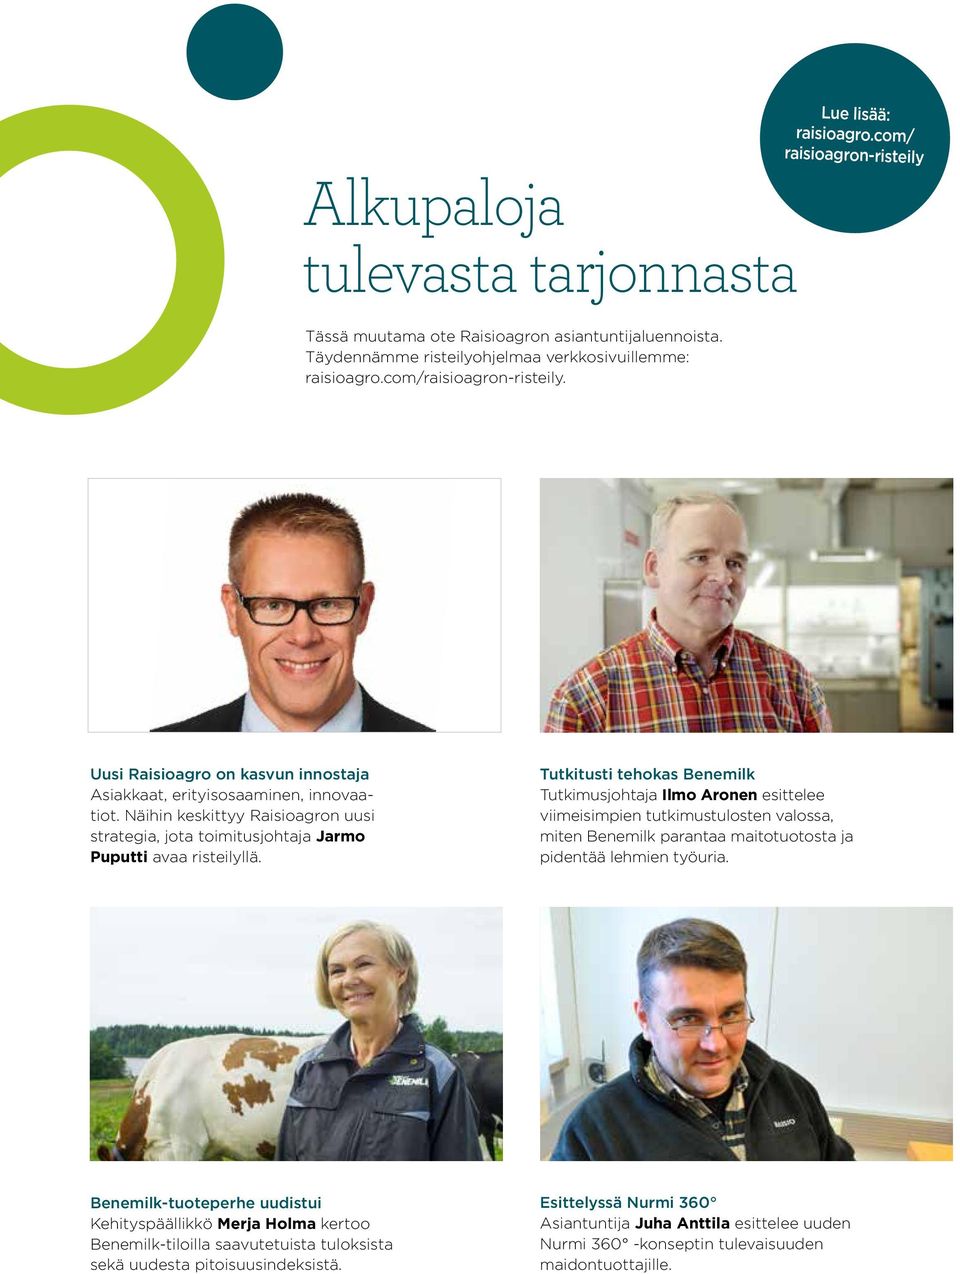 Näihin keskittyy Raisioagron uusi strategia, jota toimitusjohtaja Jarmo Puputti avaa risteilyllä.